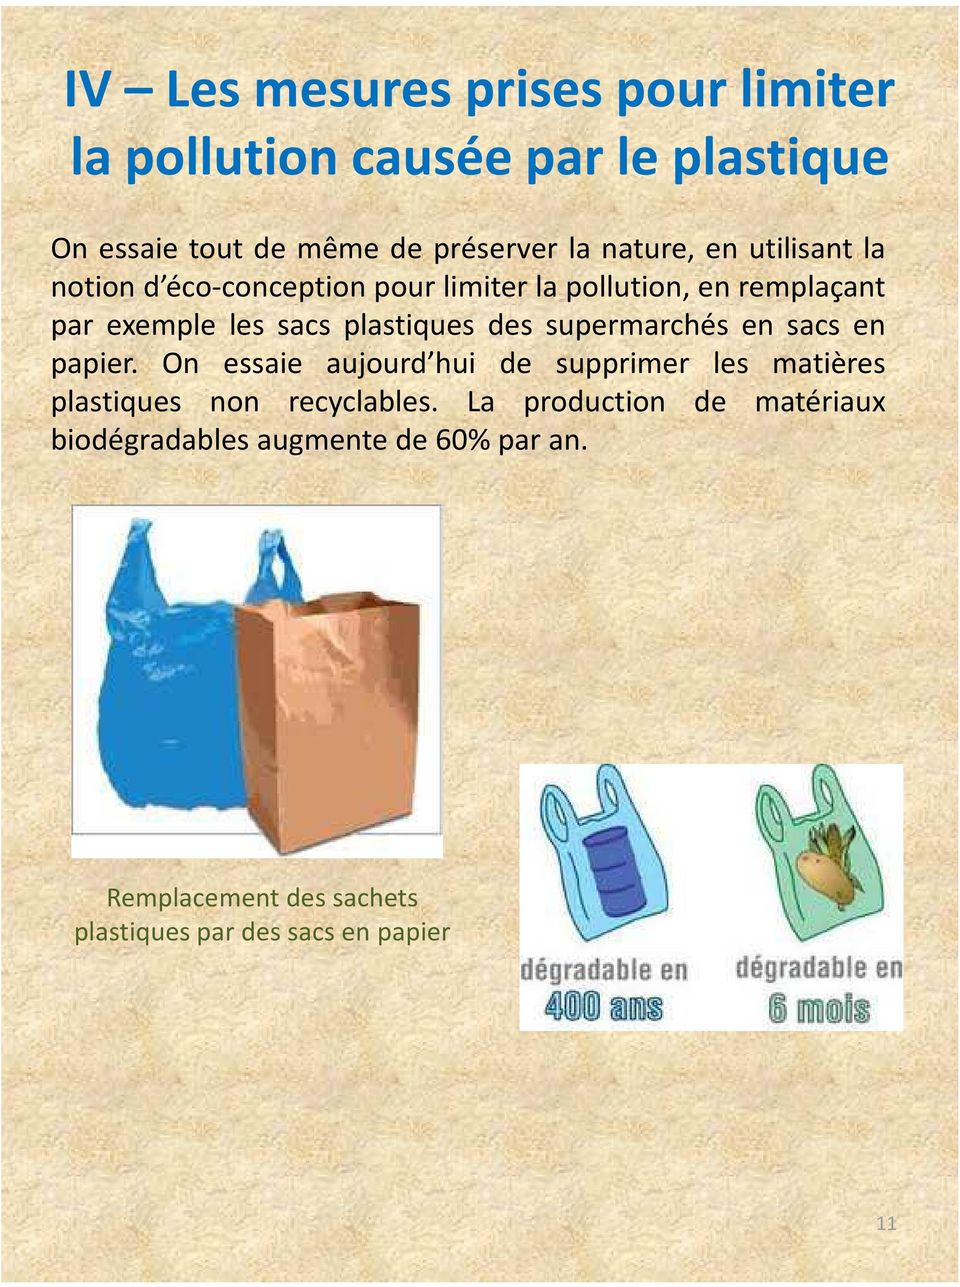 plastiques des supermarchés en sacs en papier.